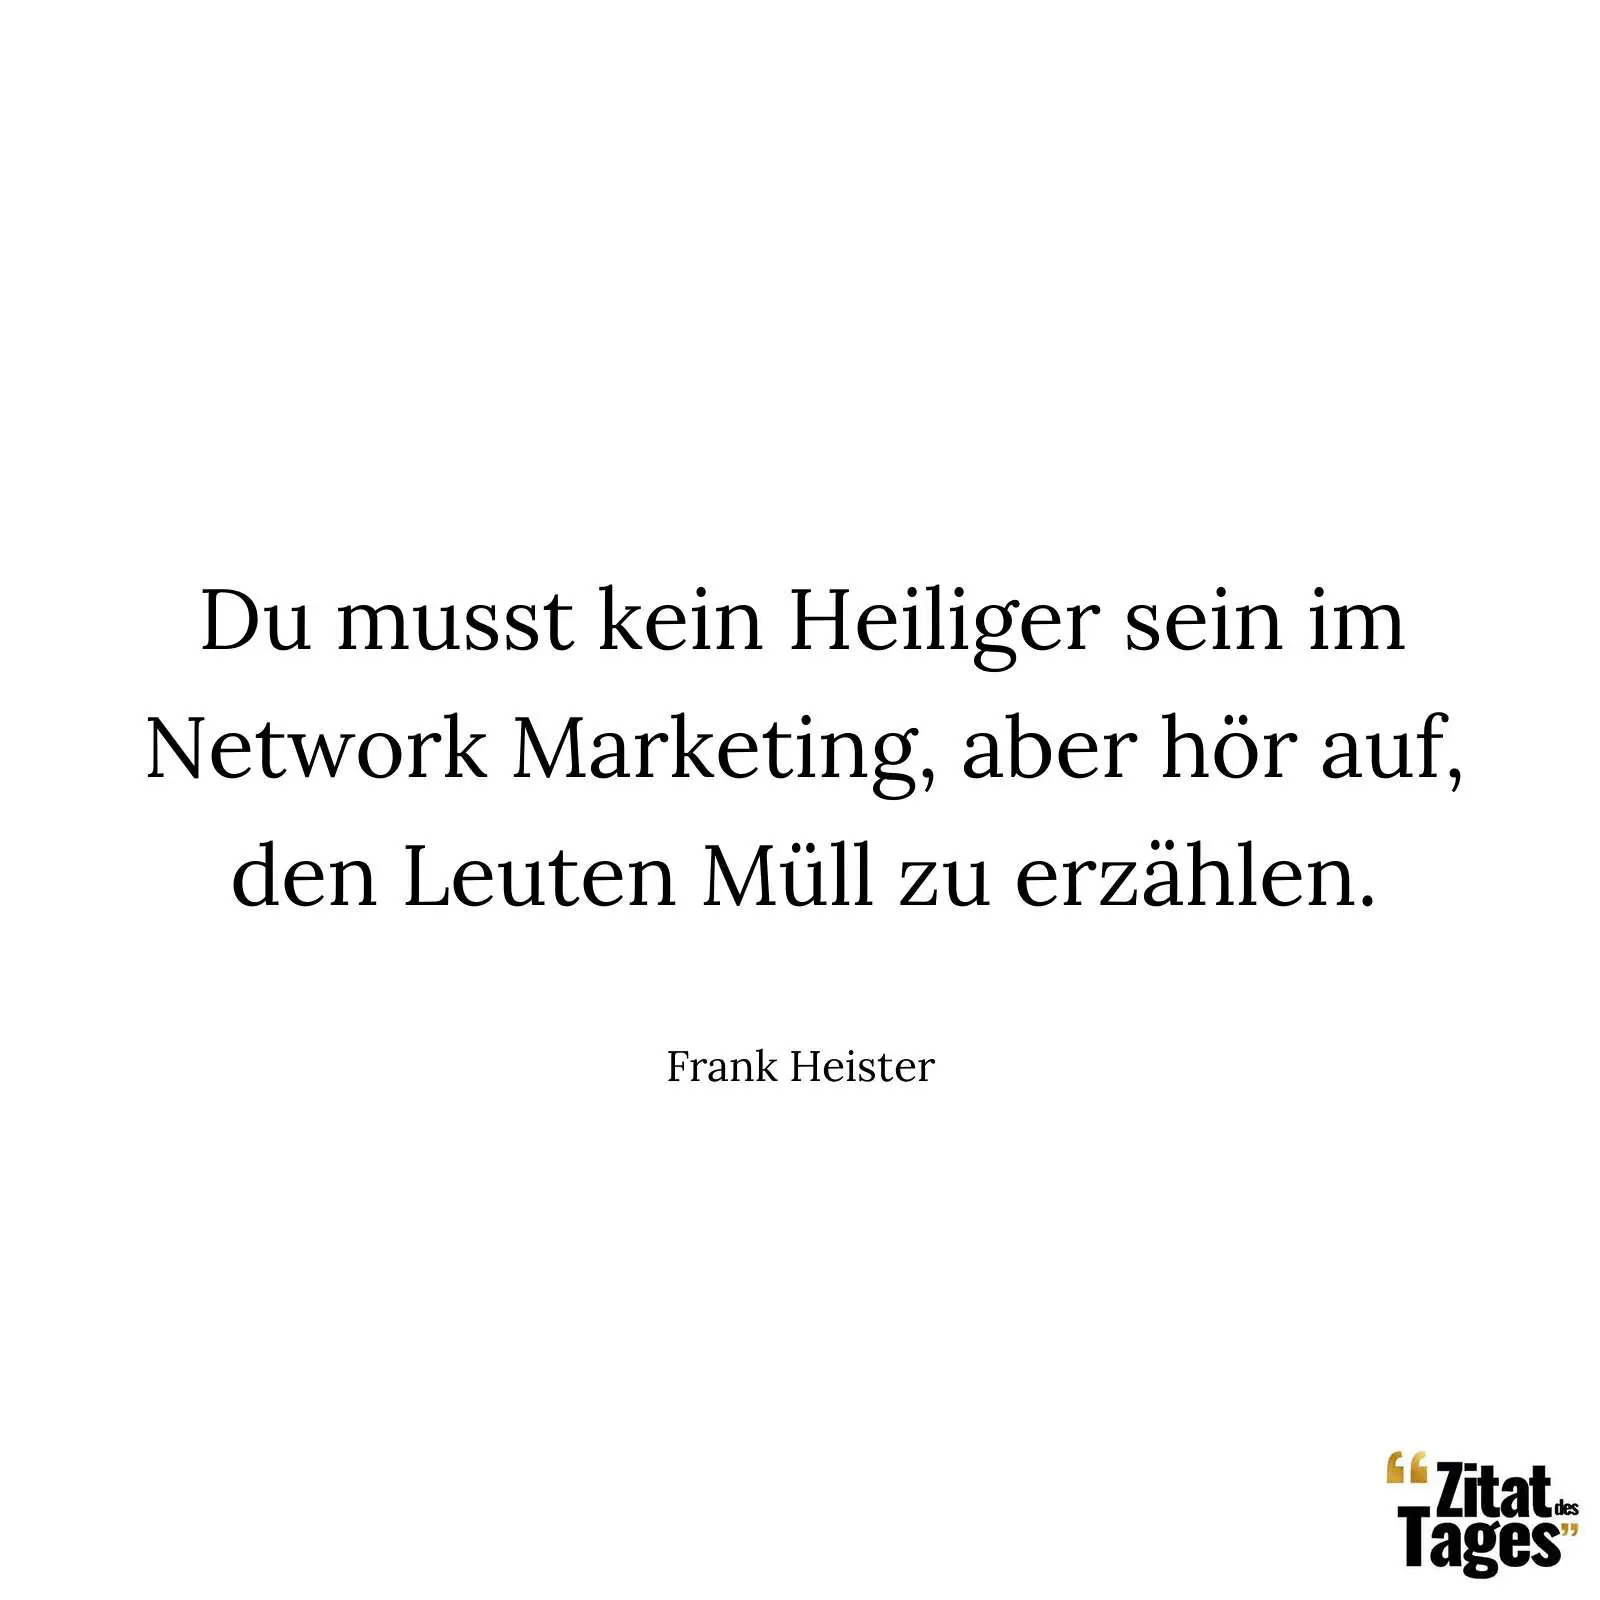 Du musst kein Heiliger sein im Network Marketing, aber hör auf, den Leuten Müll zu erzählen. - Frank Heister